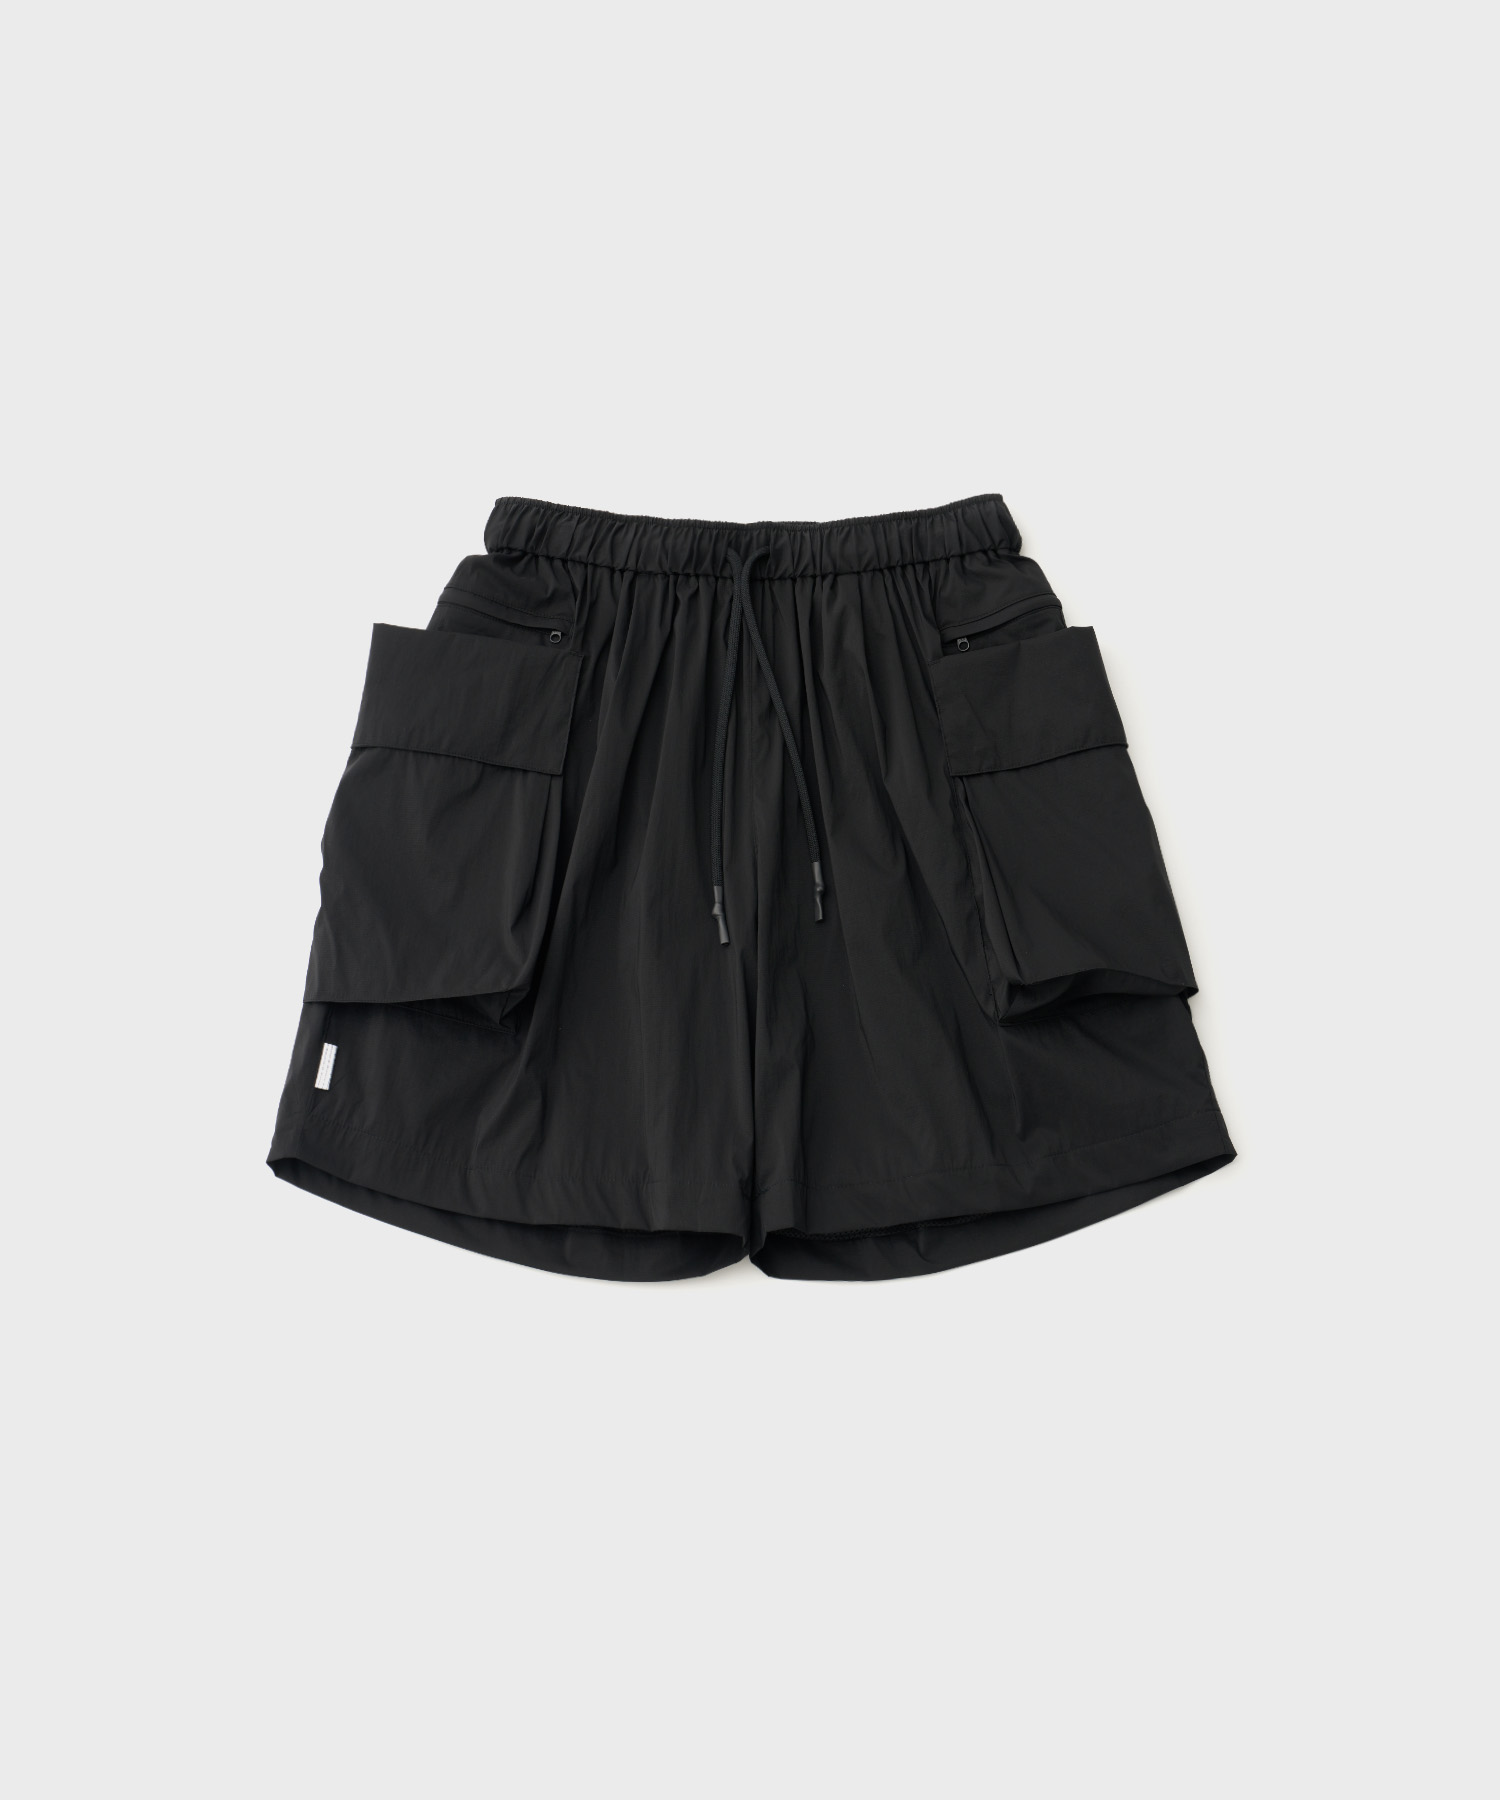 Large Pocket Shorts (Black)